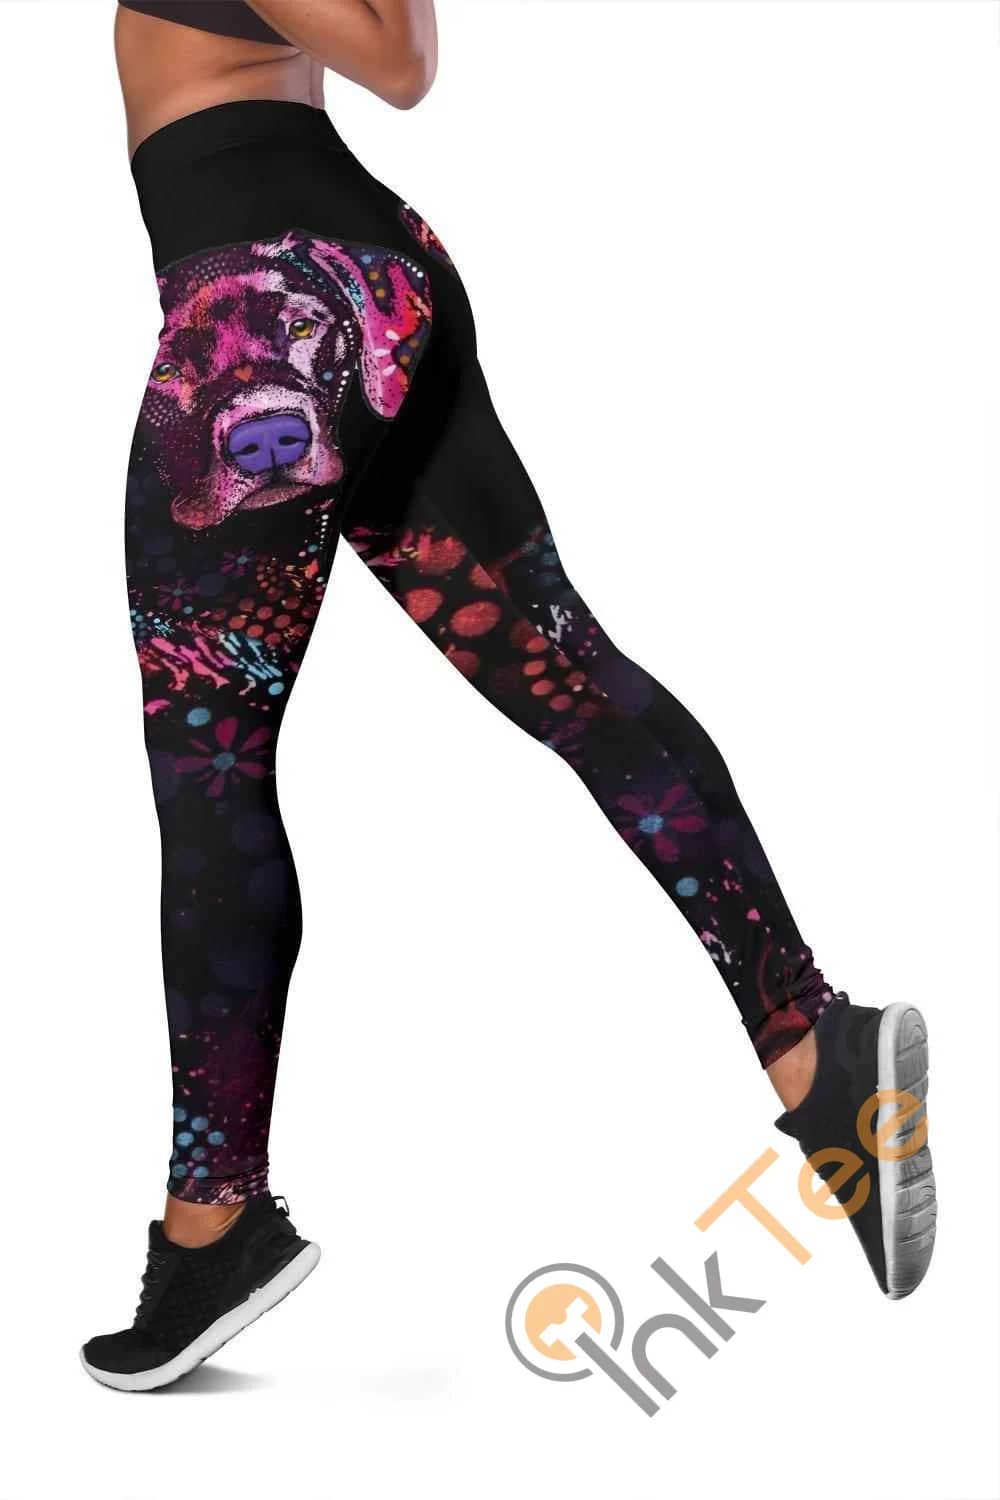 Labrador 3D All Over Print For Yoga Fitness Women's Leggings